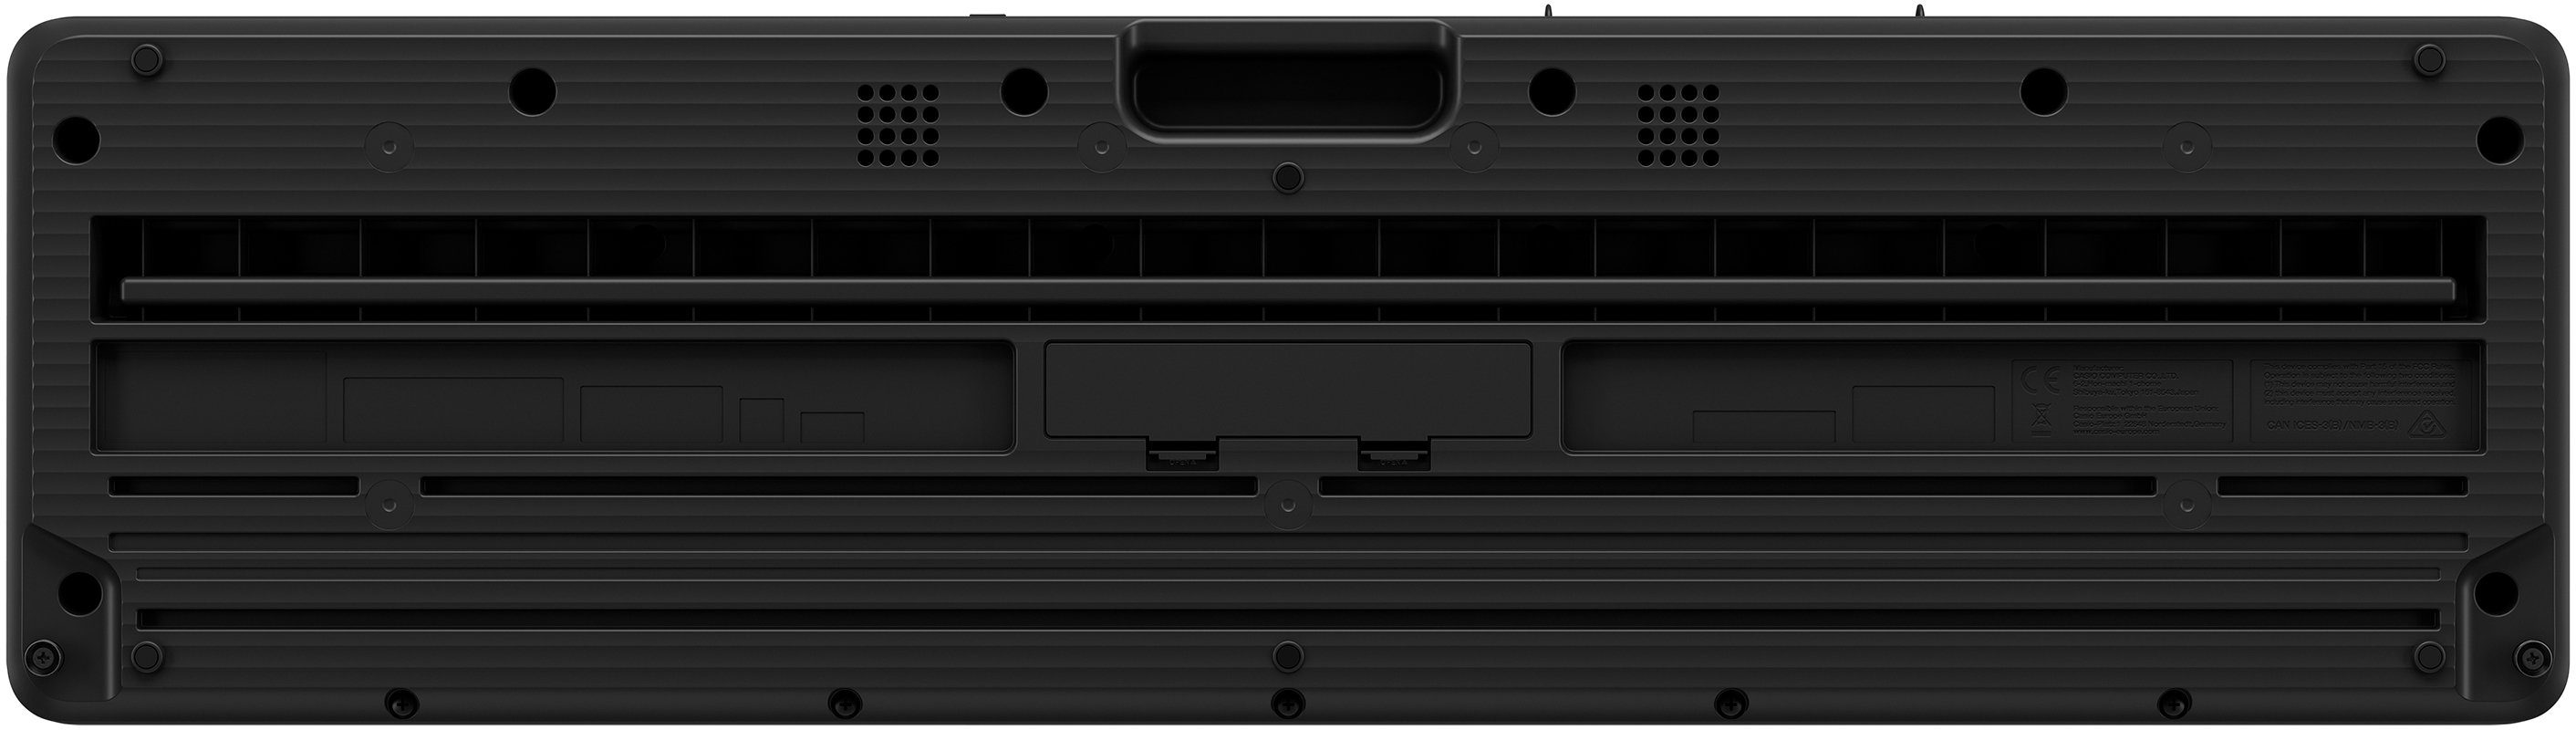 Netzteil LK-S450, inkl. Leuchttastenkeyboard CASIO Home-Keyboard